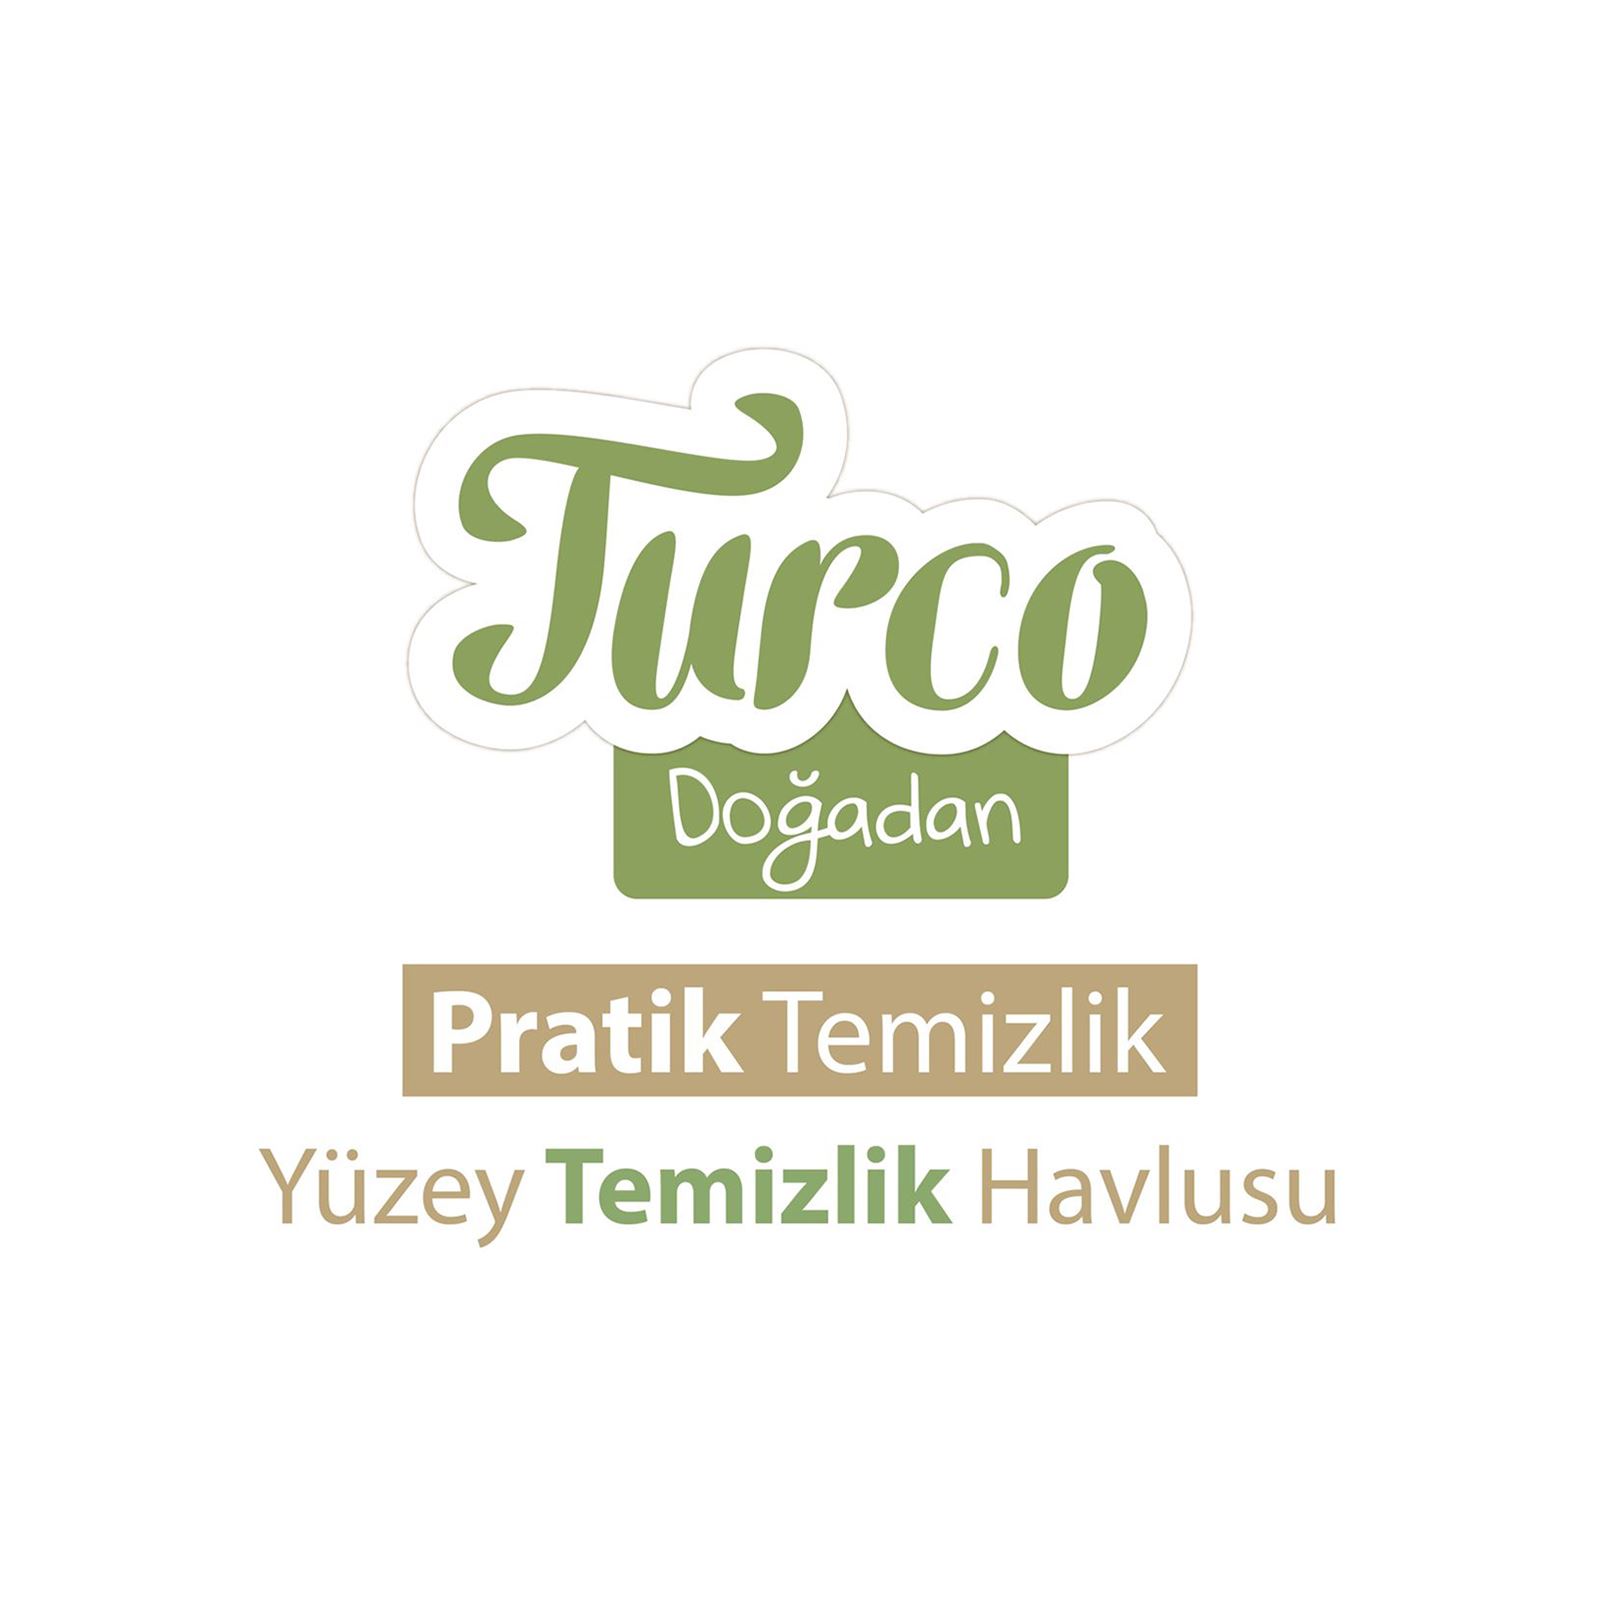 Baby Turco Doğadan Pratik Yüzey Temizleme Havlusu 100 Yaprak Beyaz